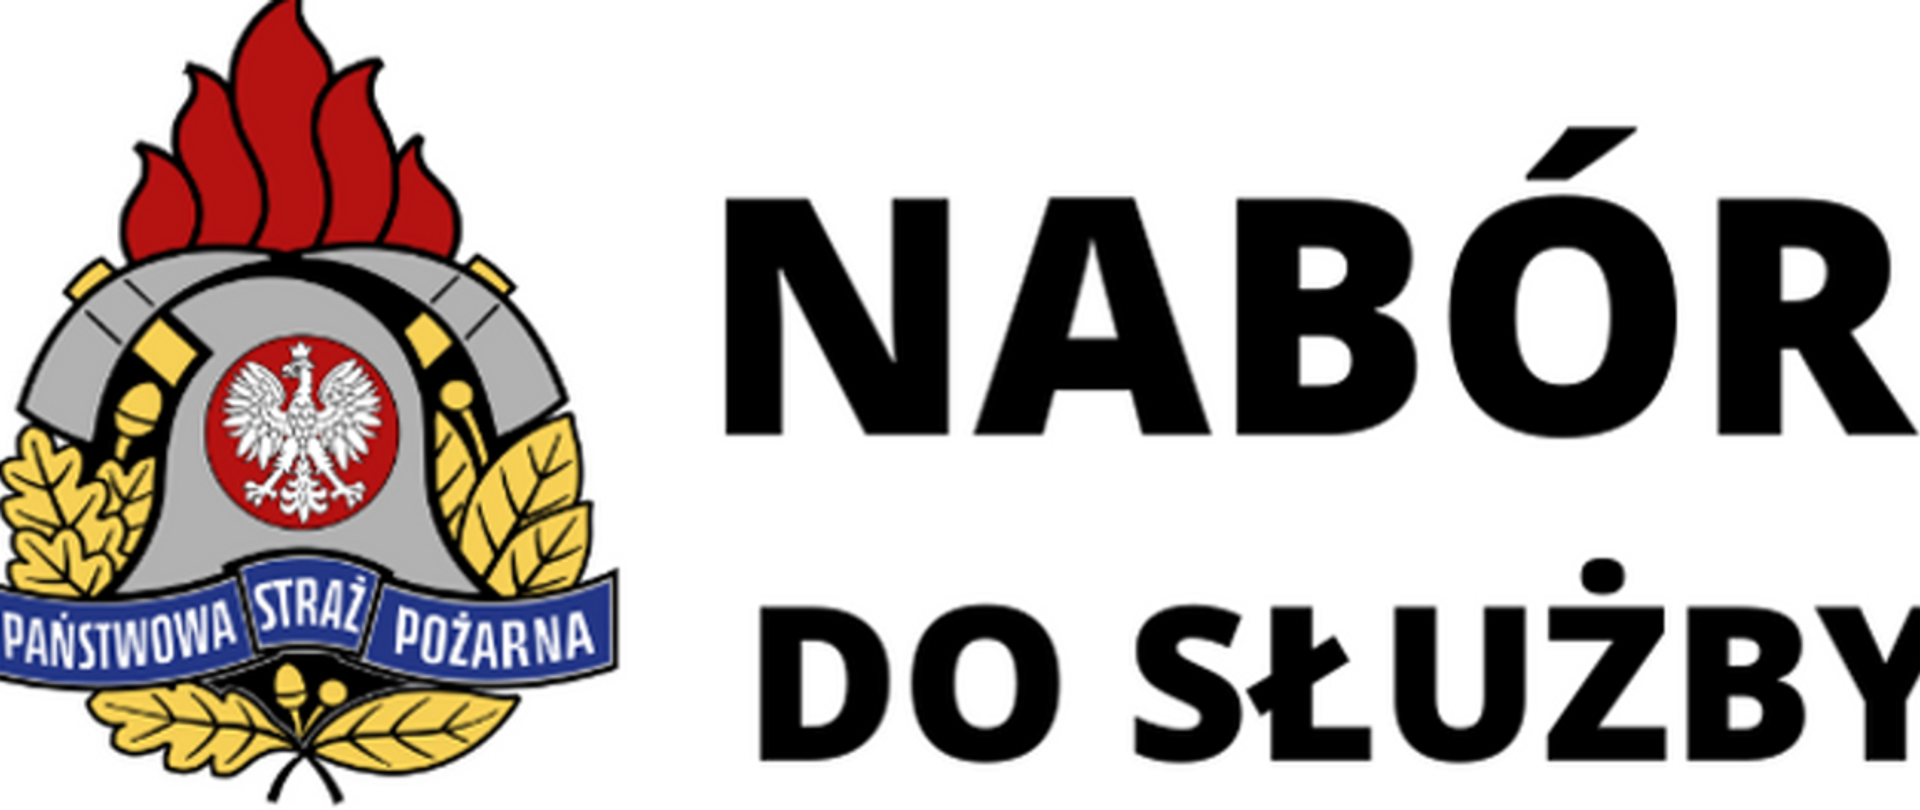 Komendant Powiatowy PSP w Nakle nad Notecią ogłasza postępowanie kwalifikacyjne o przyjęcie do służby w KP PSP w Nakle nad Notecią.